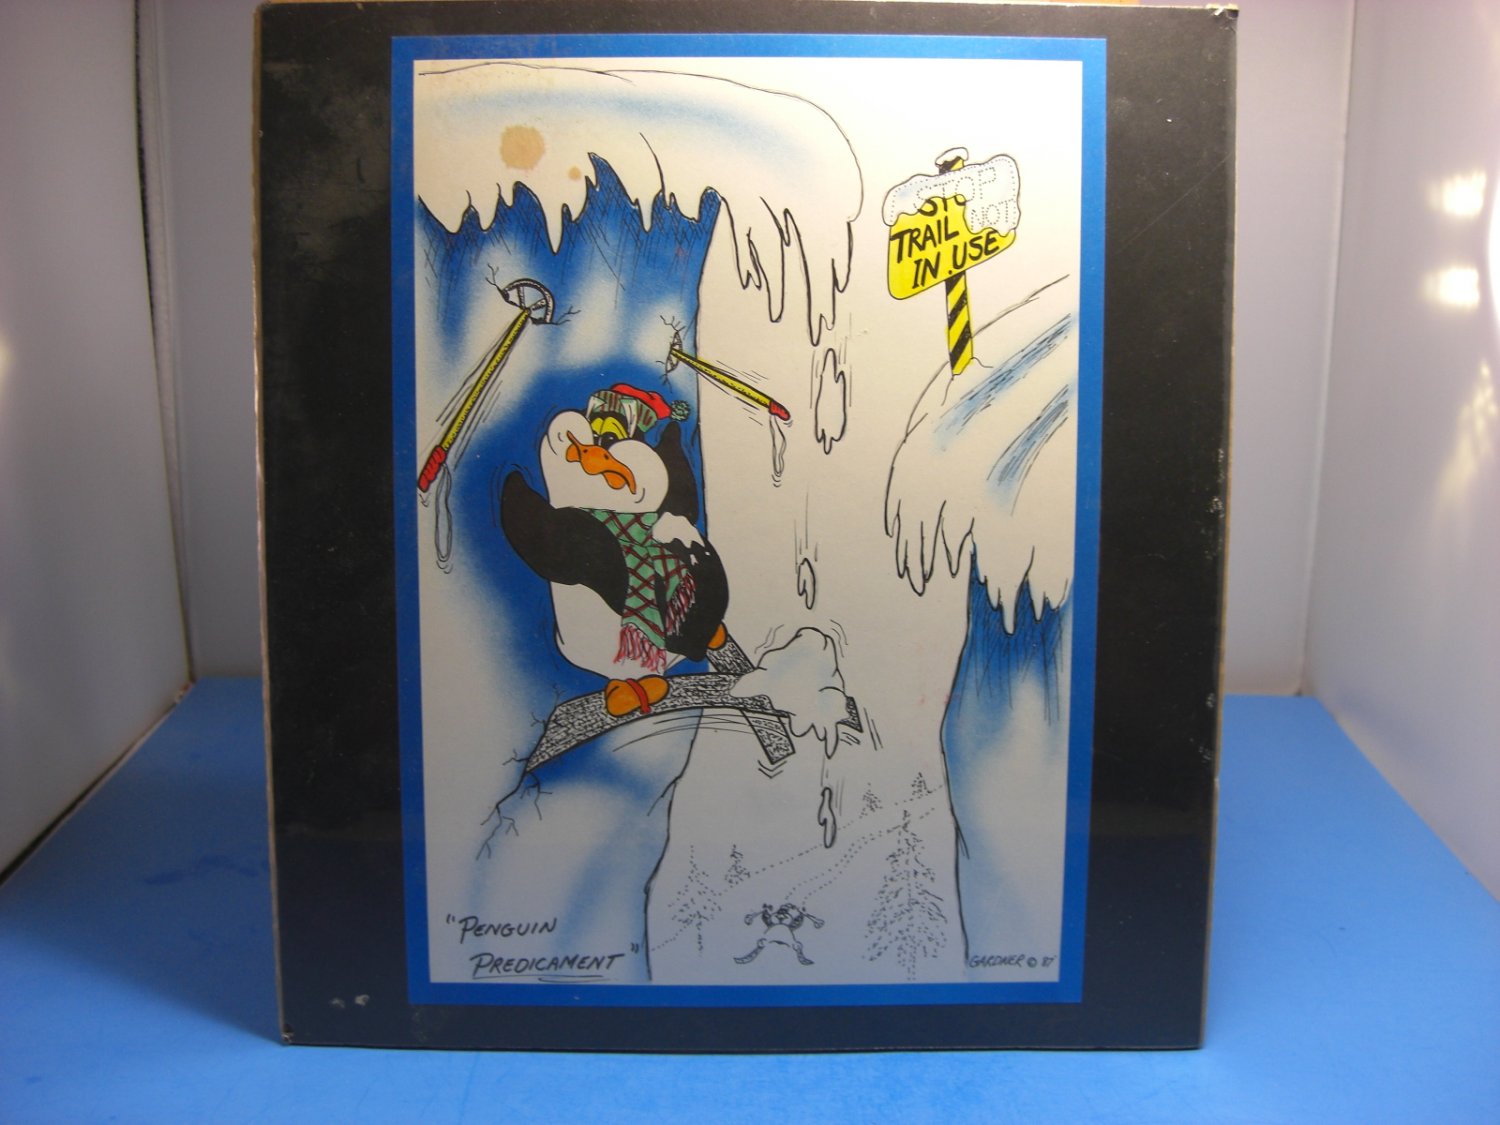 Penguin Predicament Art by Steven M. Gardner Signed 1987